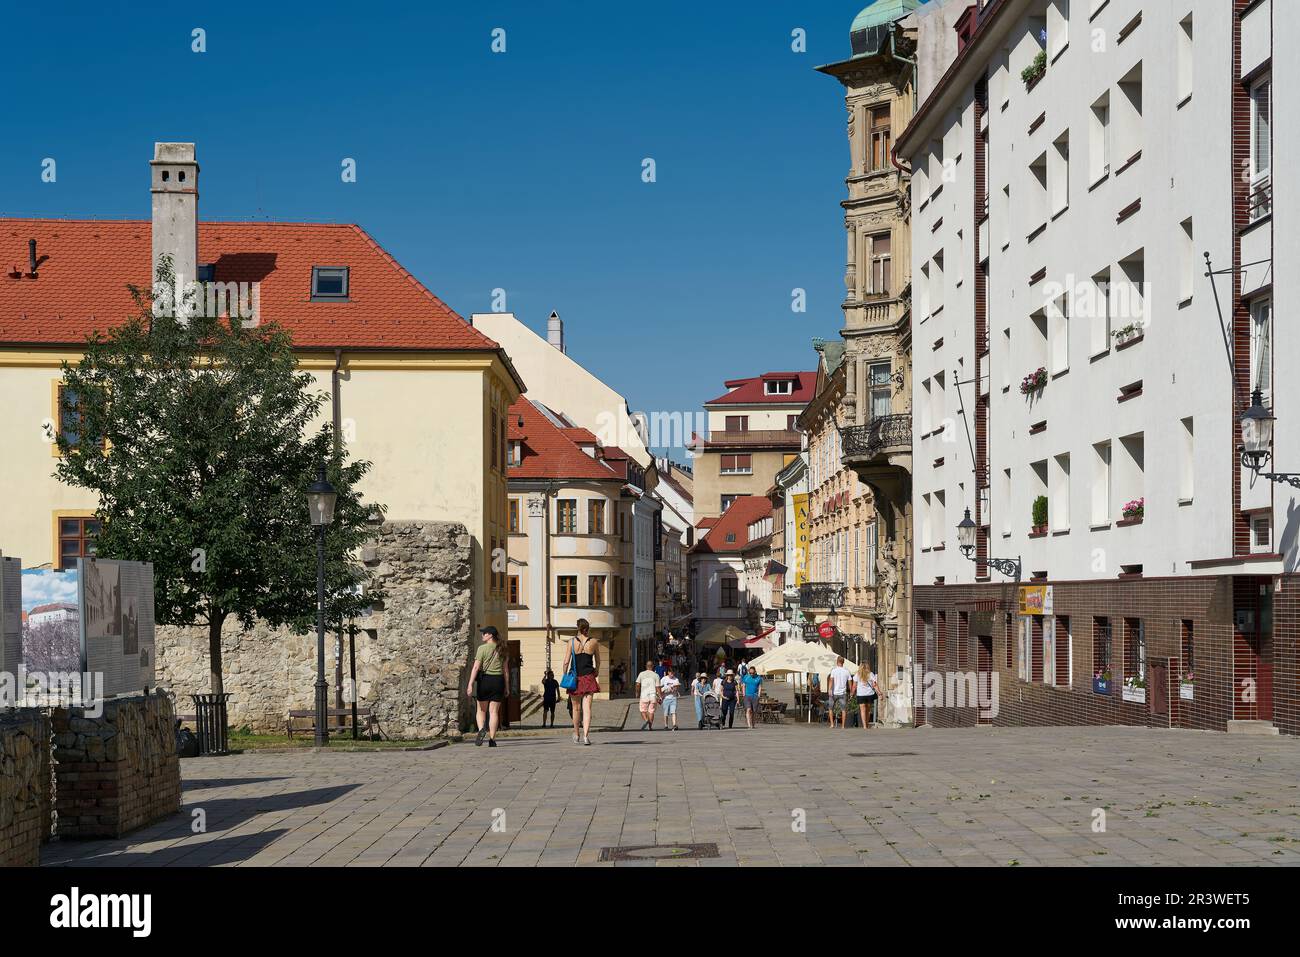 Vieille ville historique de Bratislava, la capitale de la Slovaquie, populaire auprès des touristes Banque D'Images